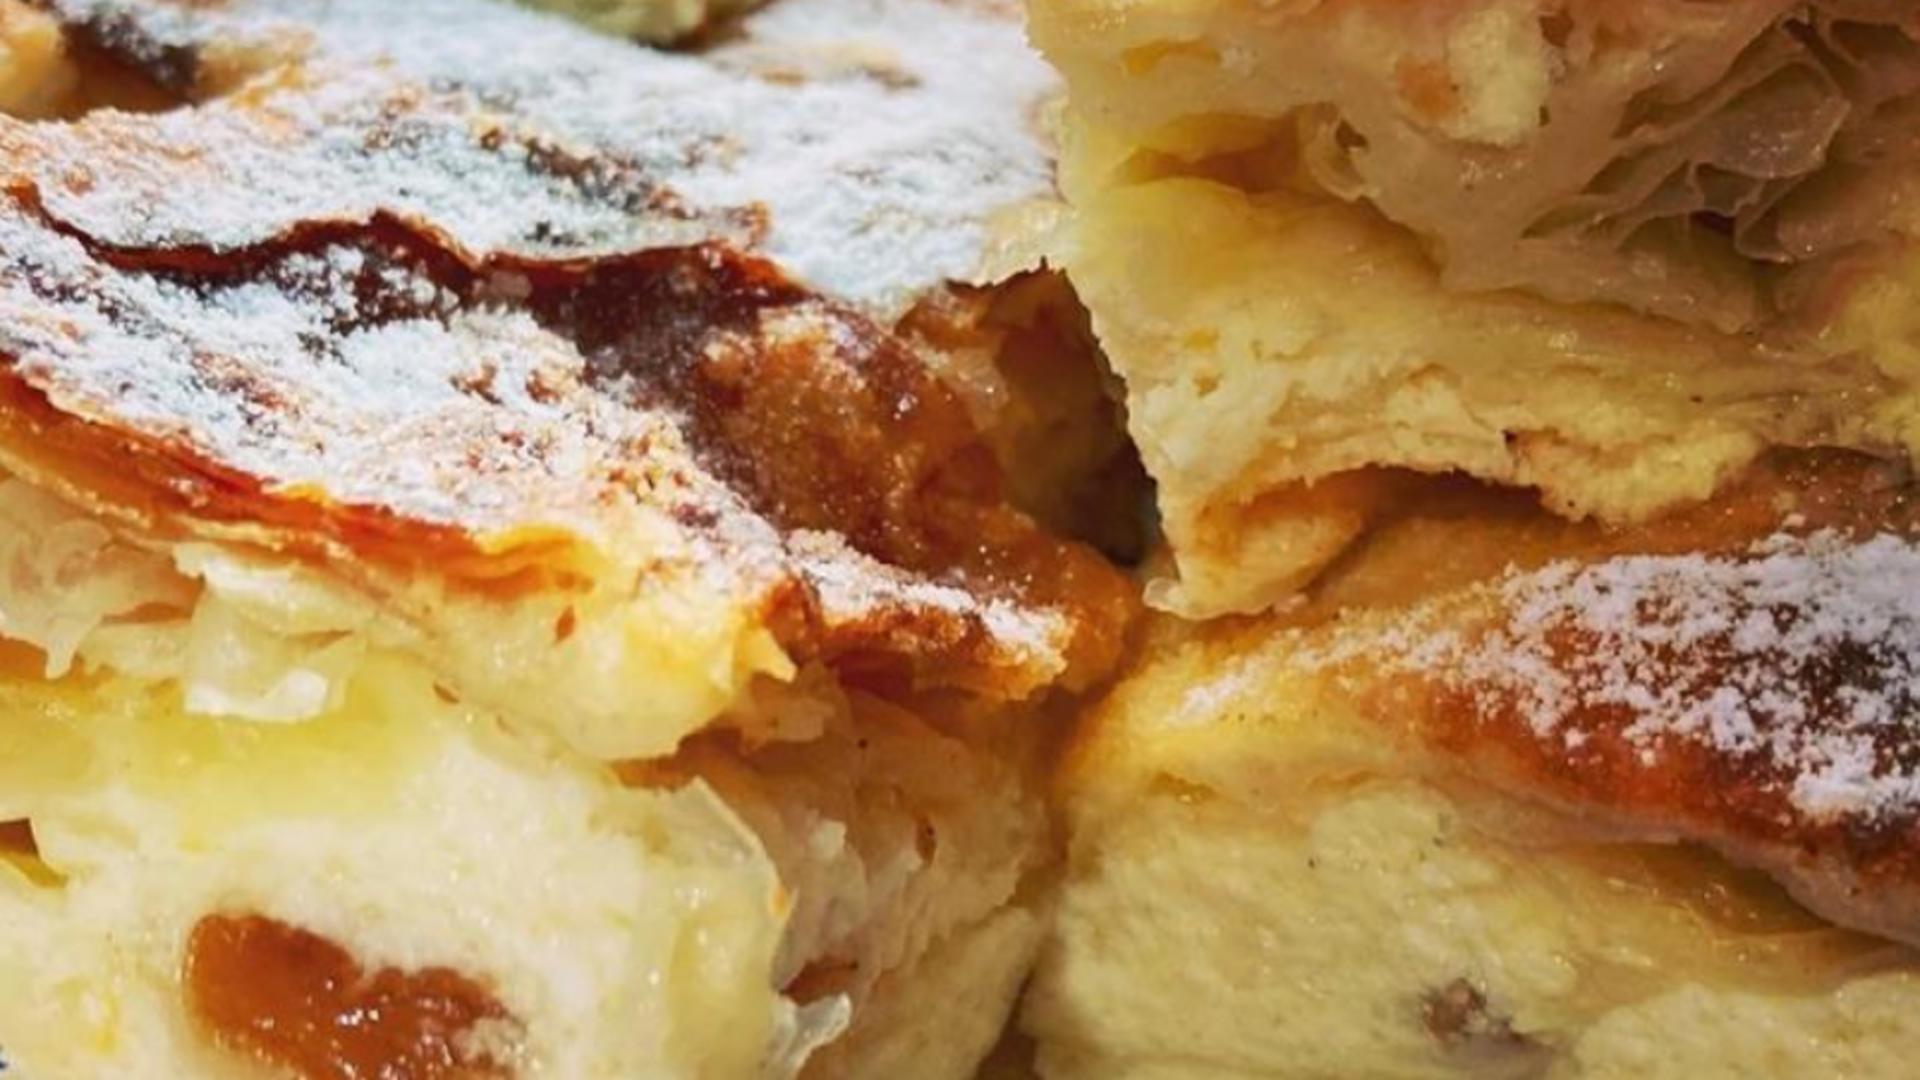 Plăcintă cu brânză dulce și iaurt - Cea mai simplă rețetă pentru un desert delicios